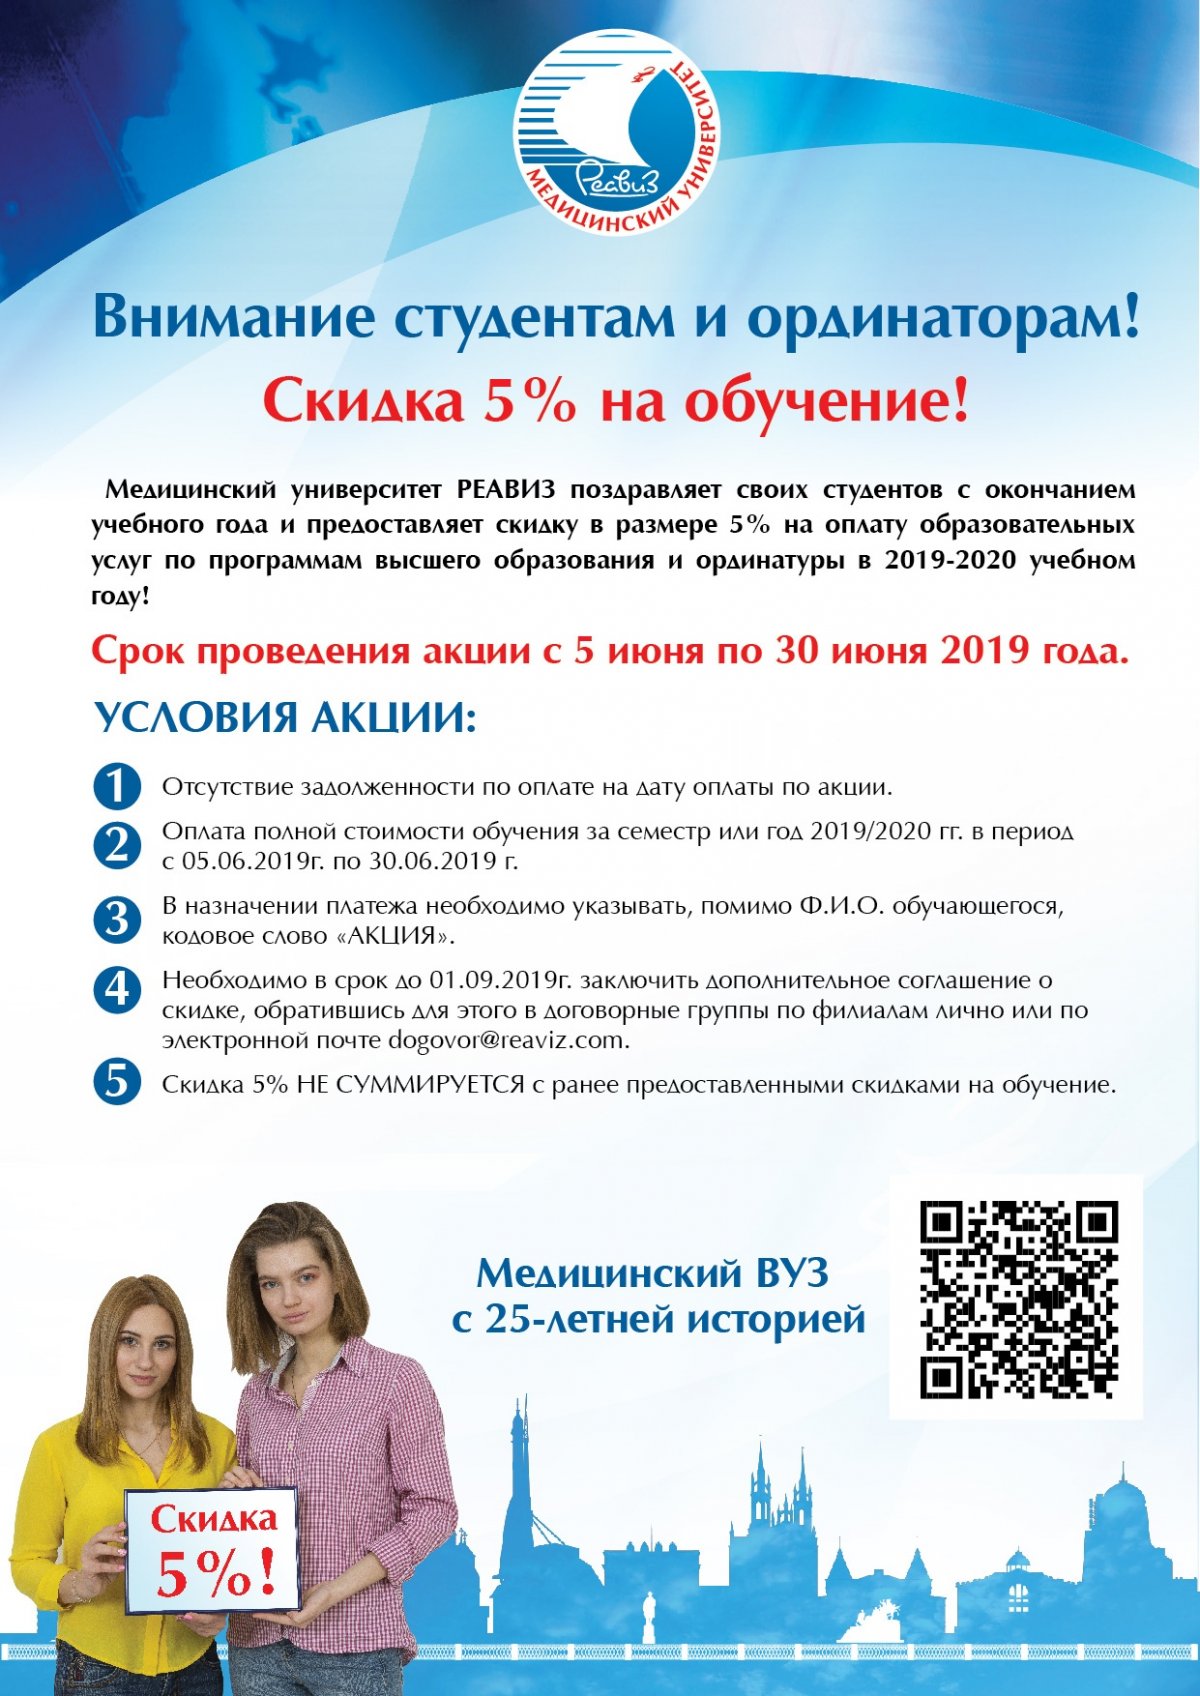 ВНИМАНИЕ! Новость от 18-06-2019